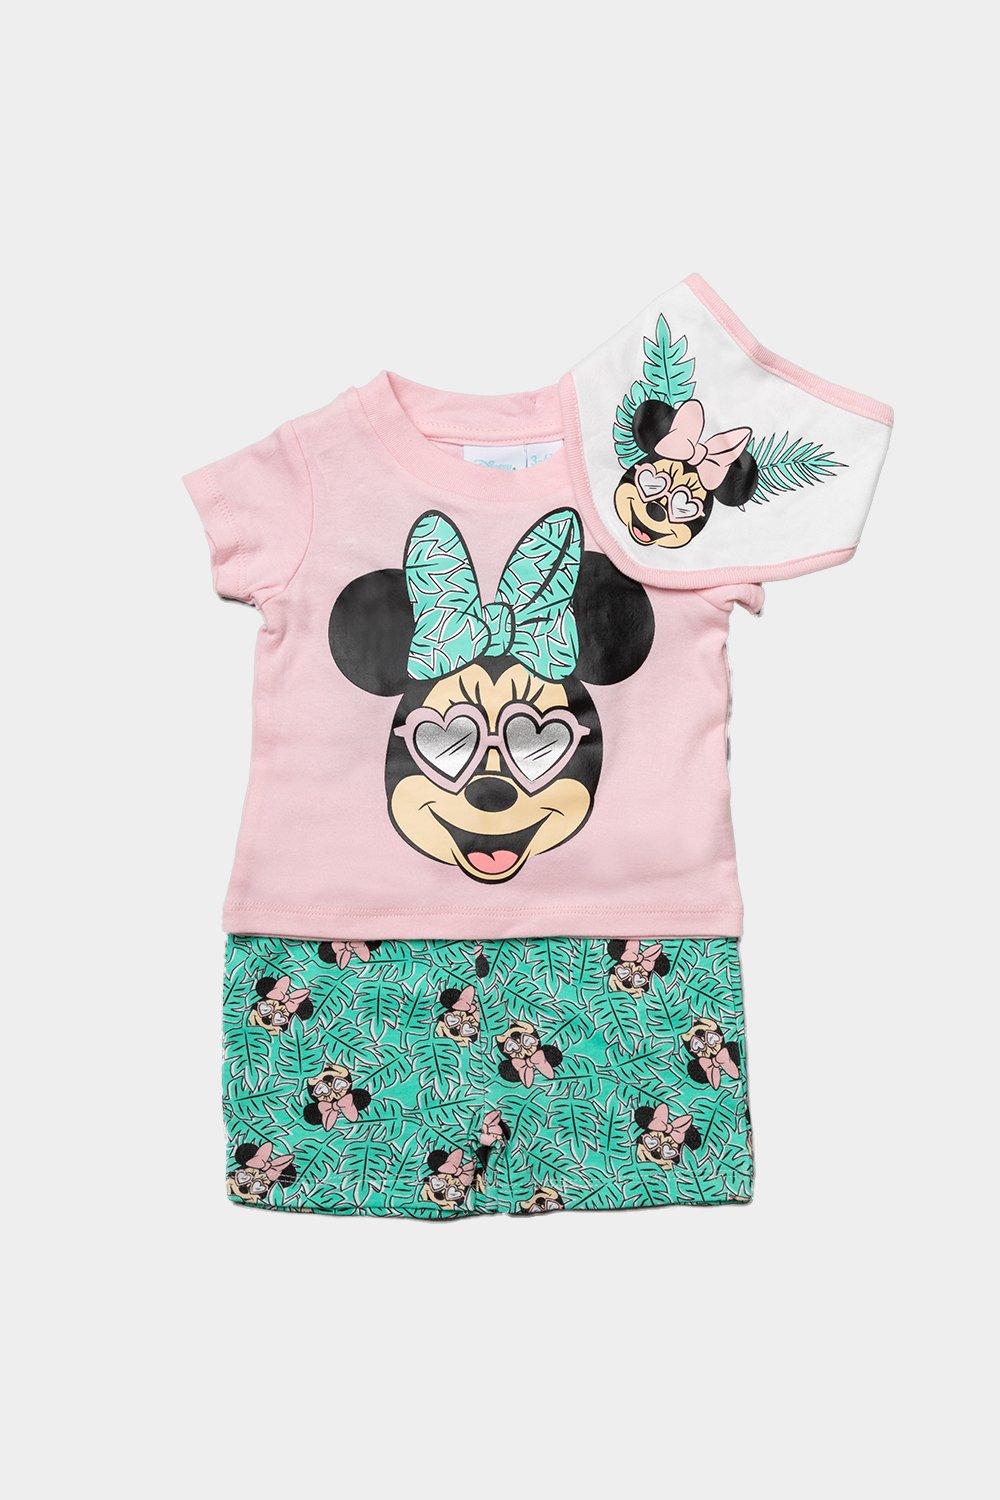 Тропический костюм из трех предметов Минни Маус Disney Baby, розовый куклы и пупсы кукла минни маус minnie mouse сладкое латте mickey mouse jakks pacific